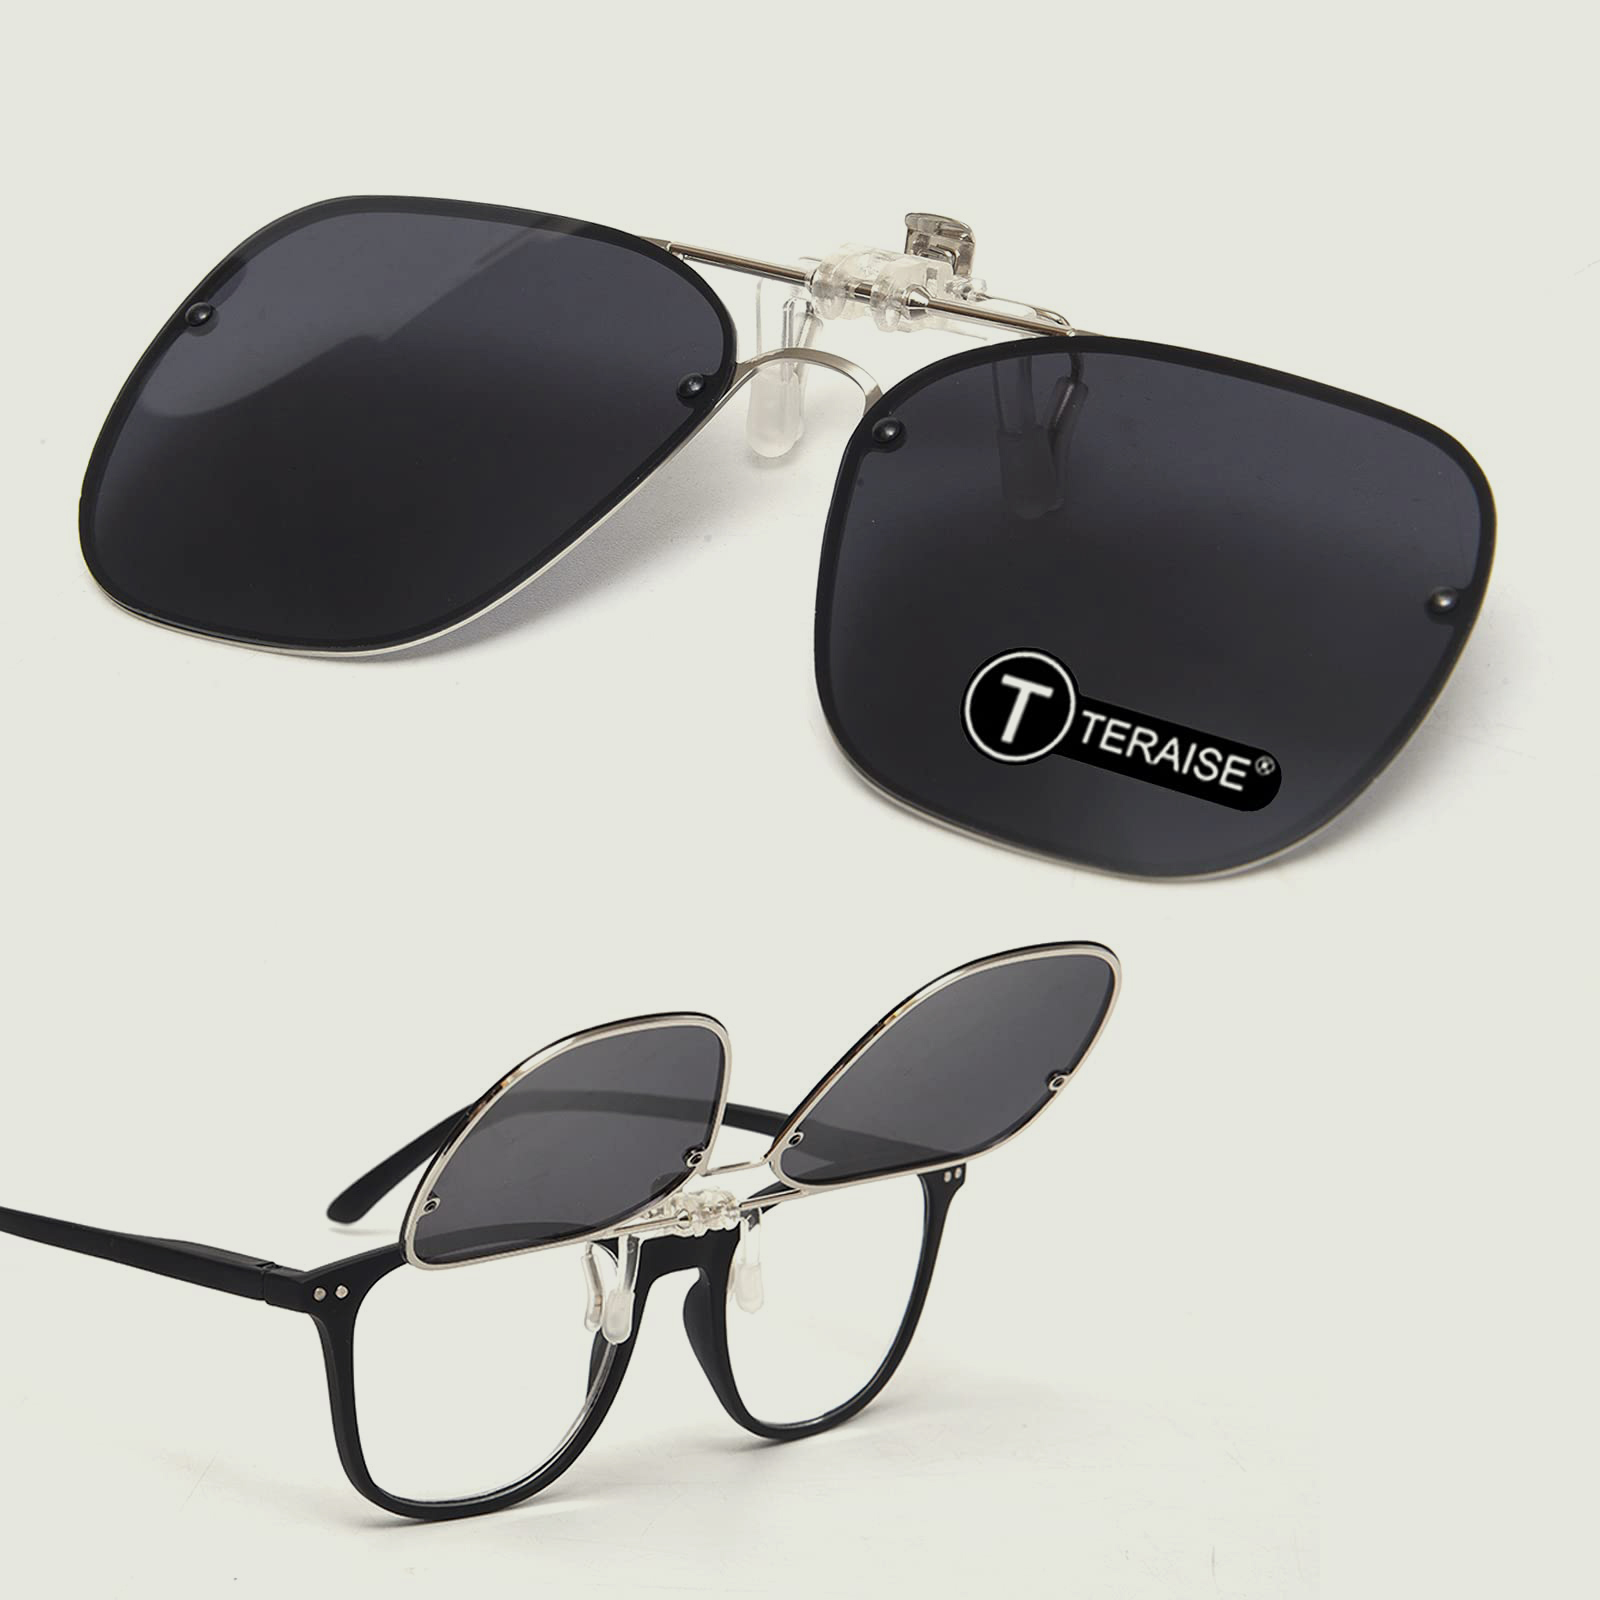 TERAISE Polarized Clip-On Driving Sunglasses with Flip Up Function-Adatto per la guida di pesca Sport allaria aperta 